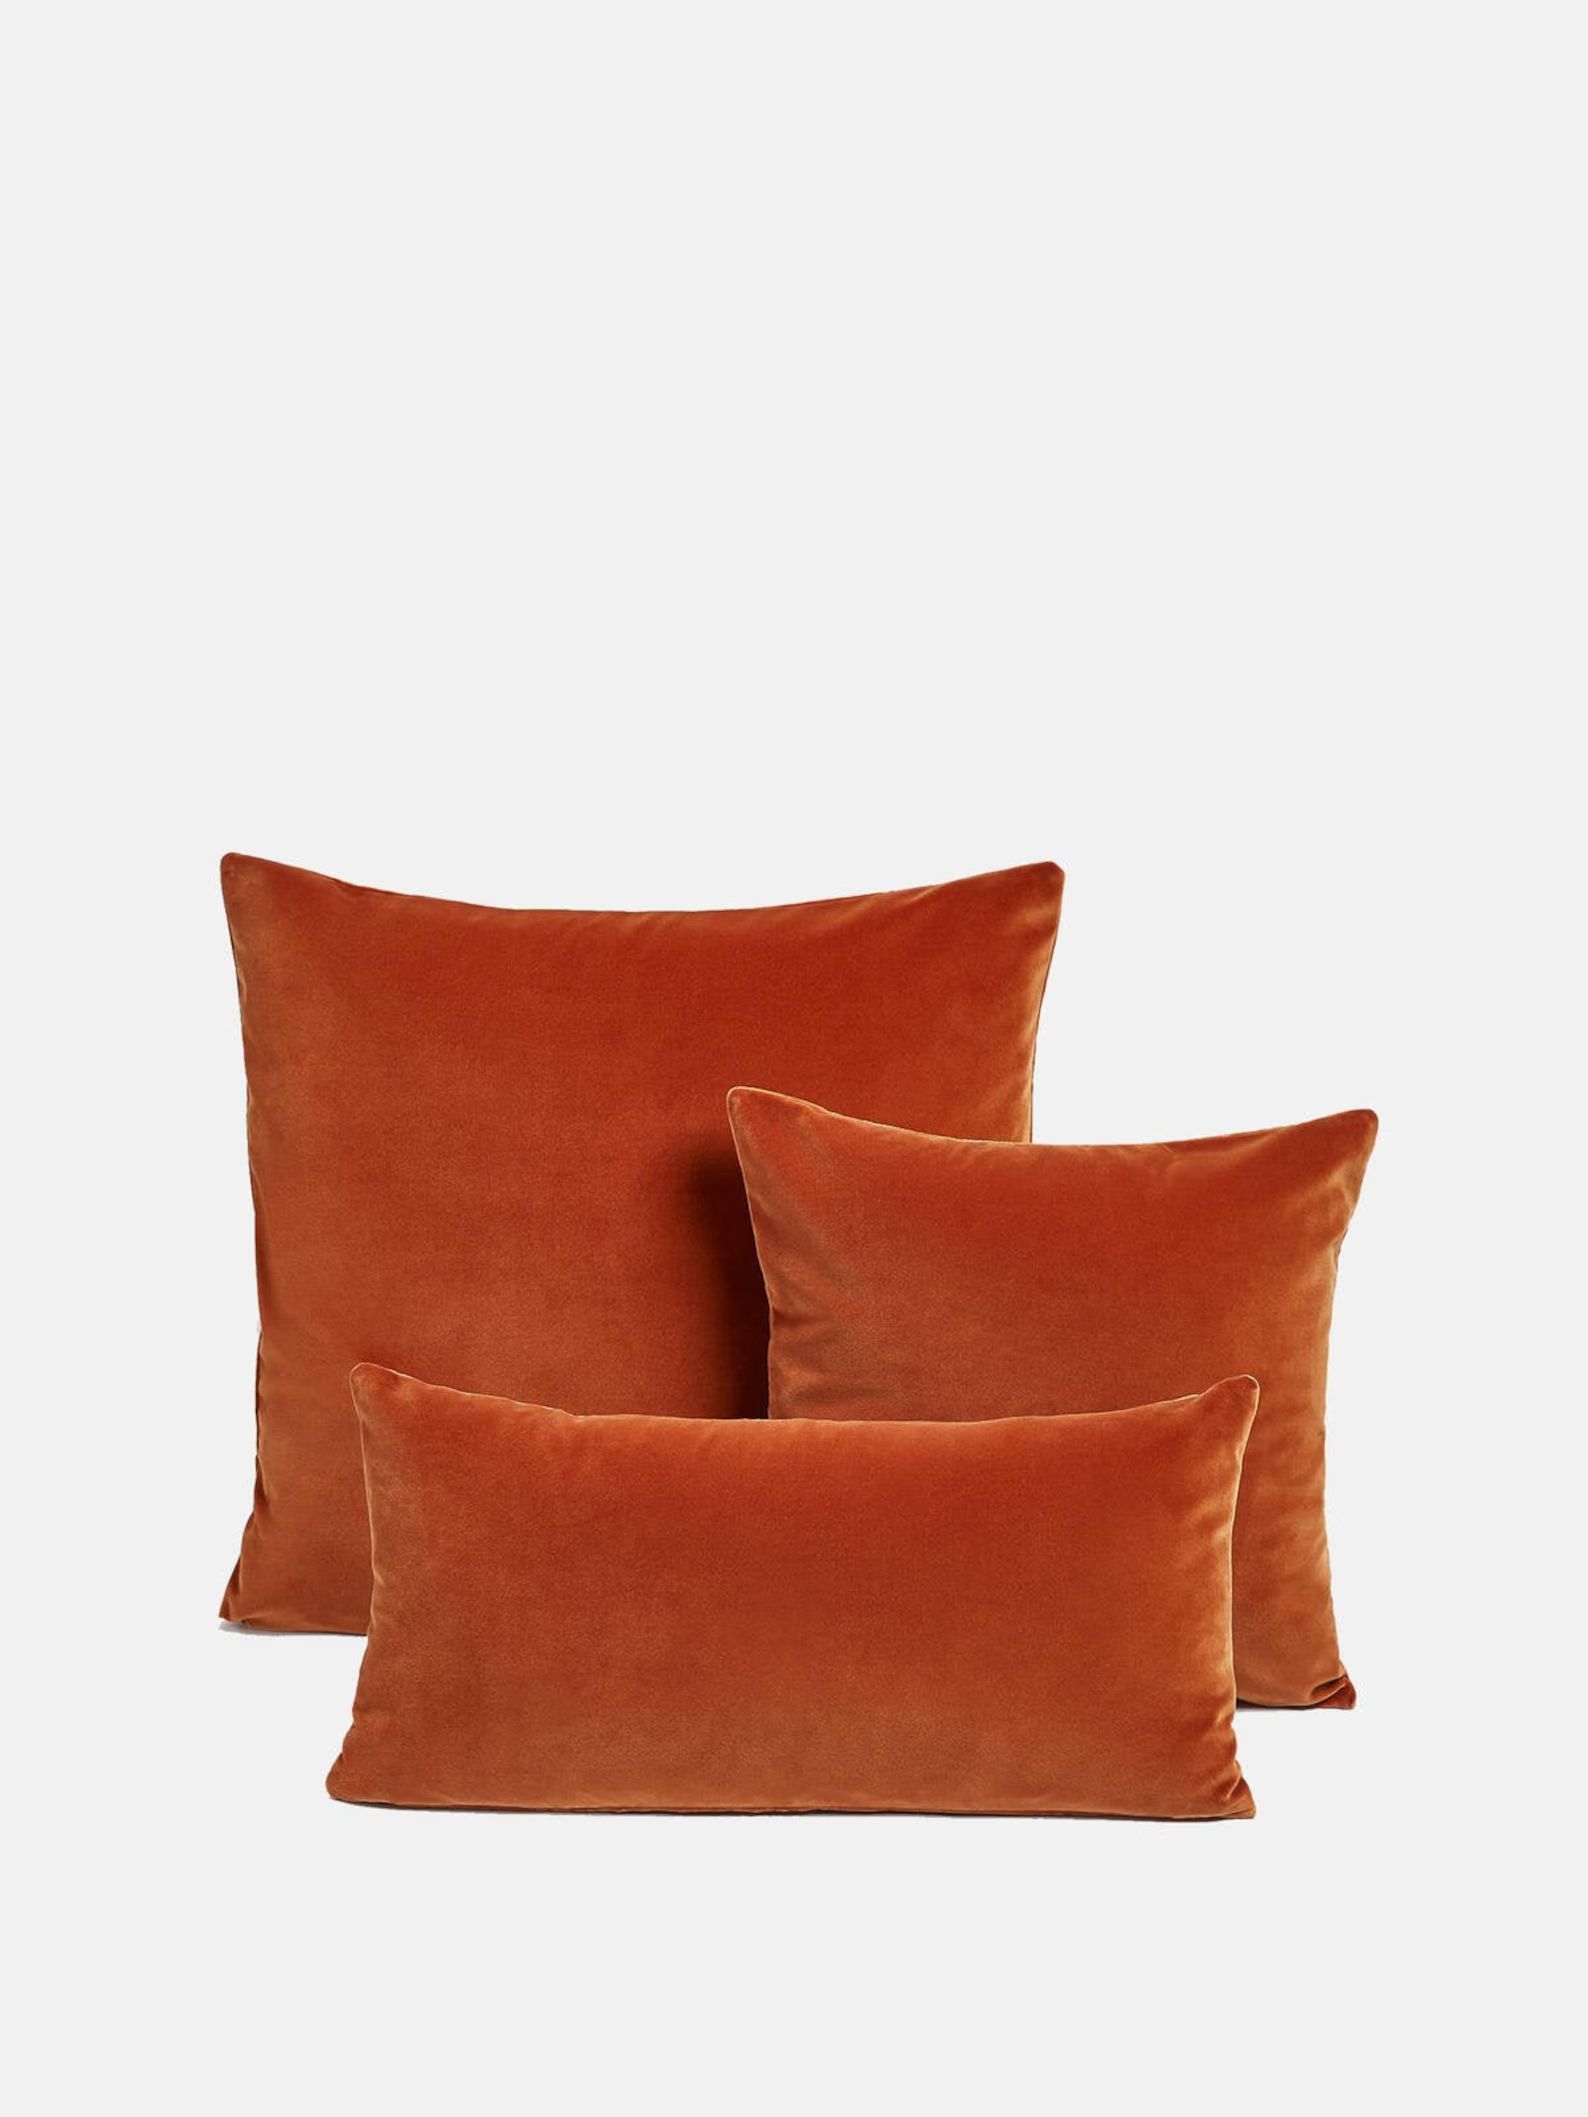 SALE! Burnt Orange Velvet Pillow Cover 18x18 20X20 14x36 Velvet Pillows, Decorative Pillow, Velve... | Etsy (US)